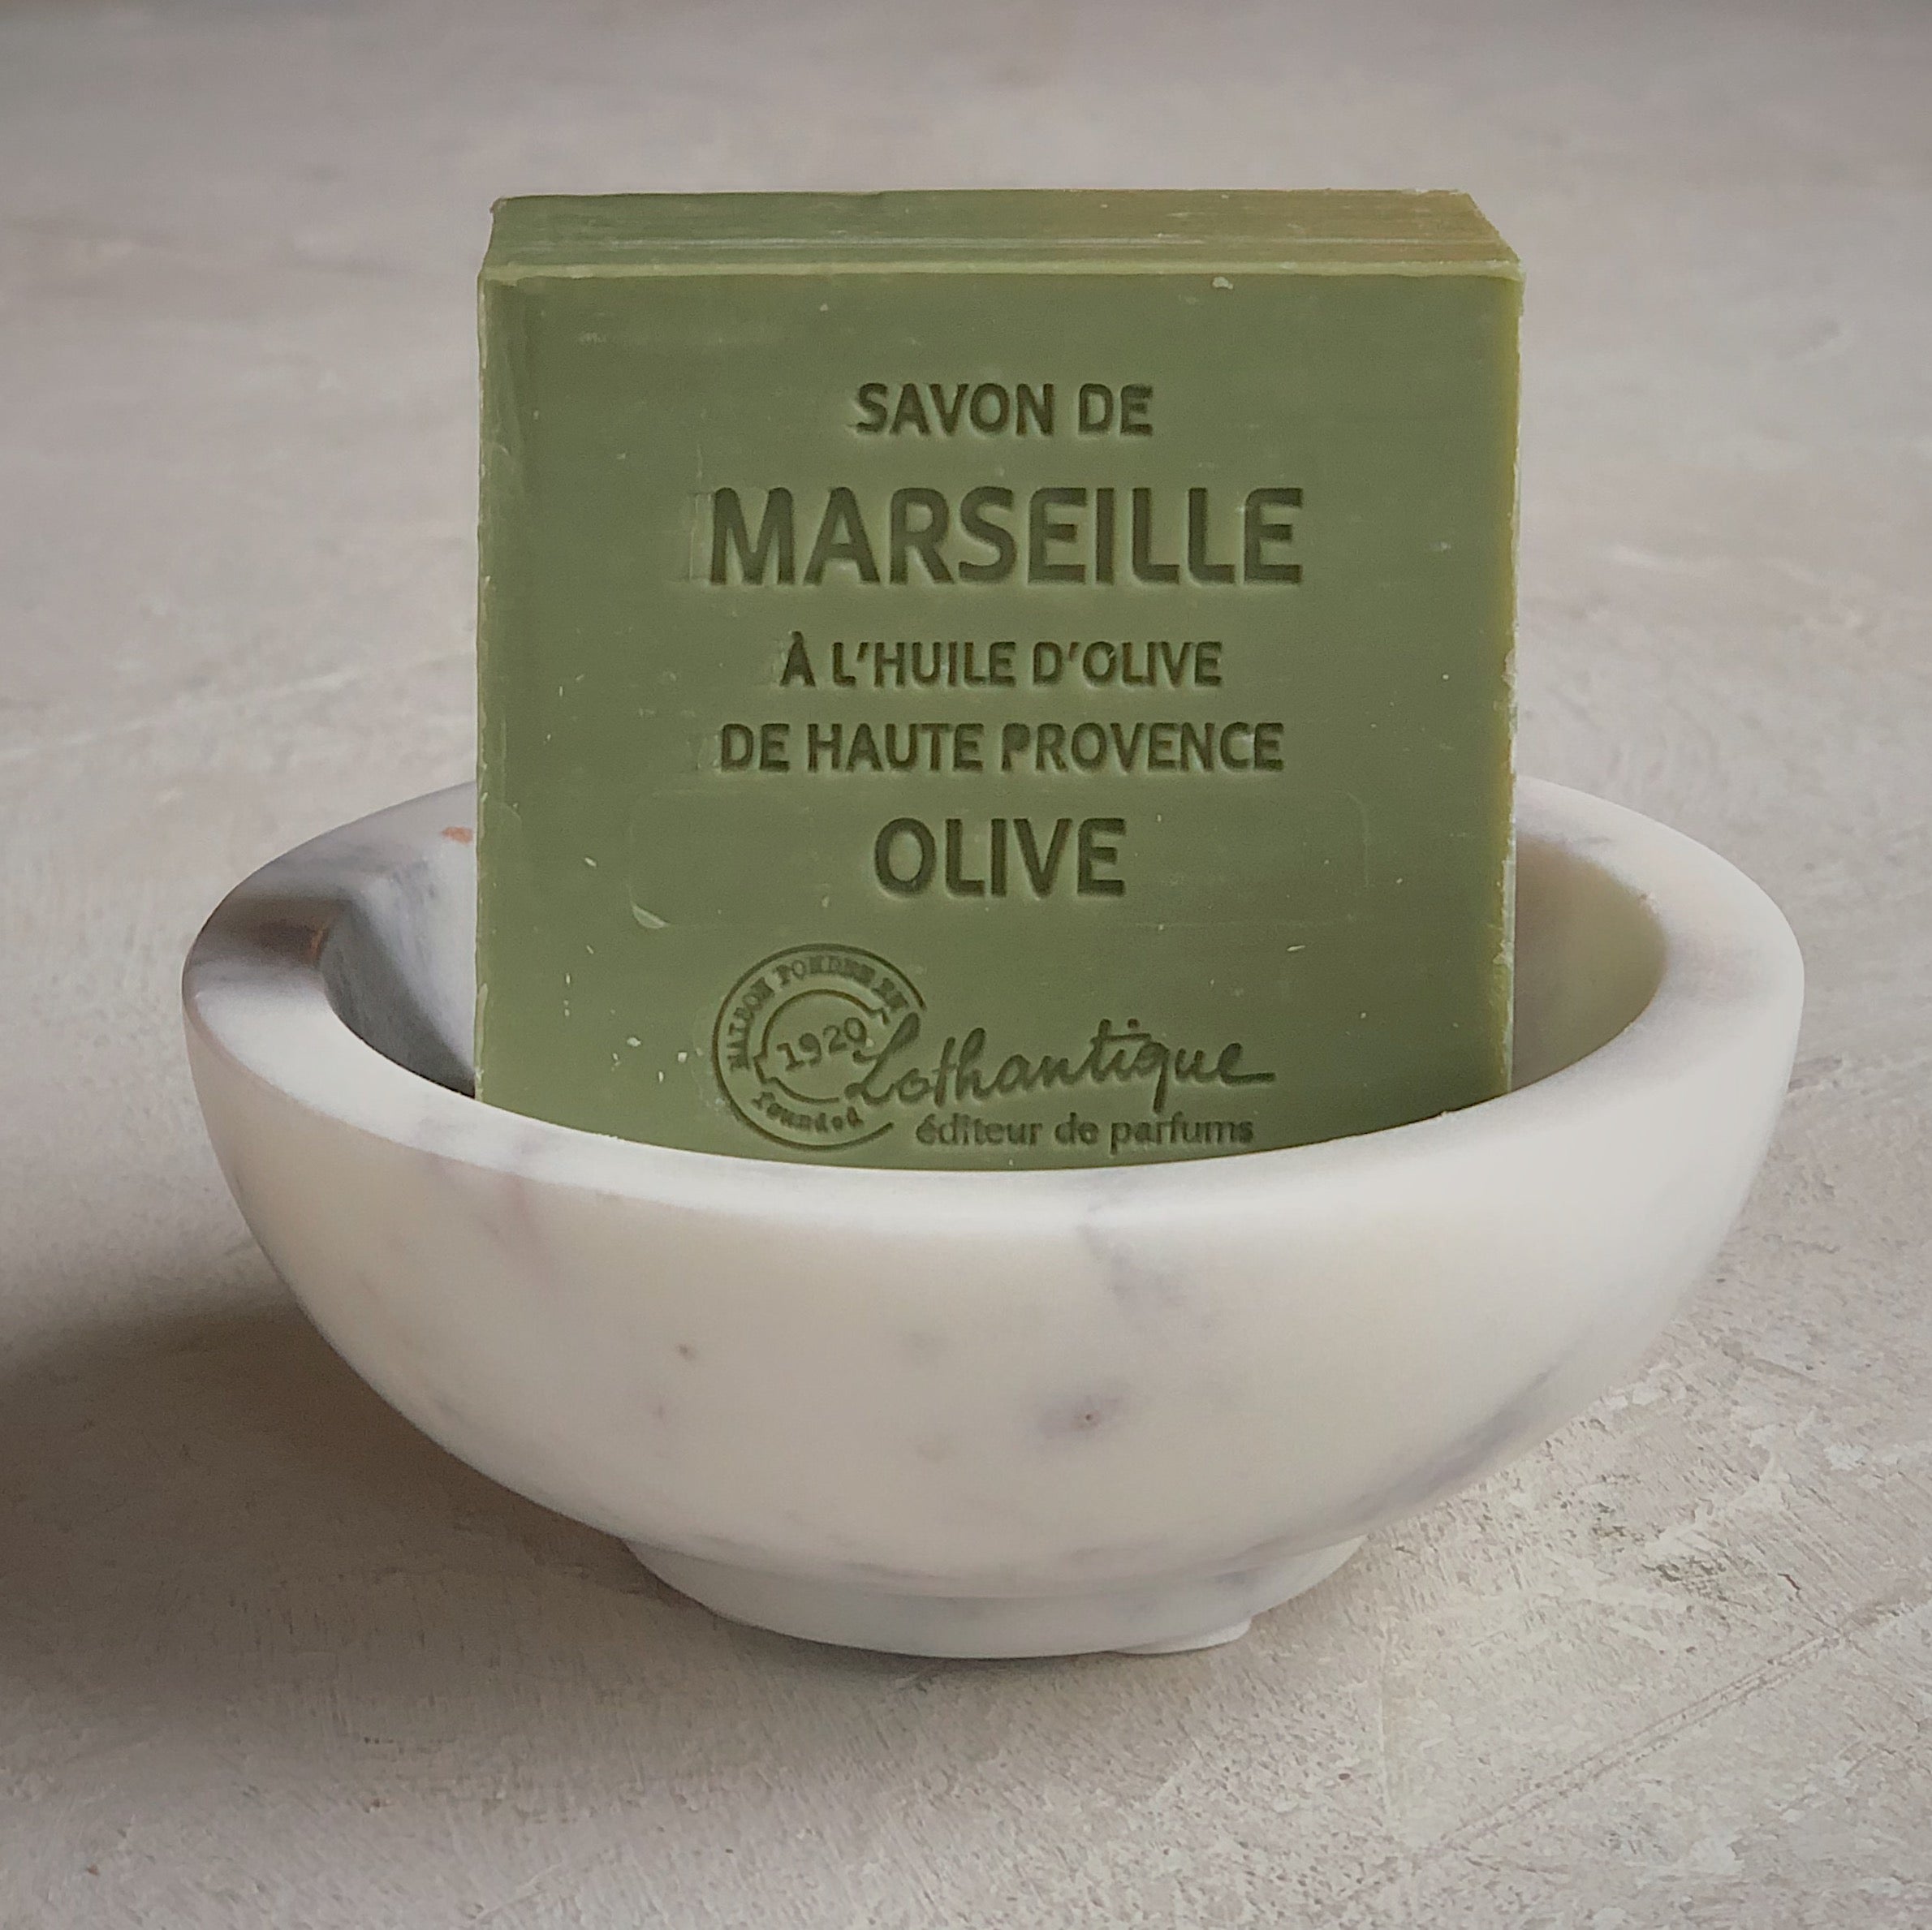 Savon de Marseille - Olive 100 g